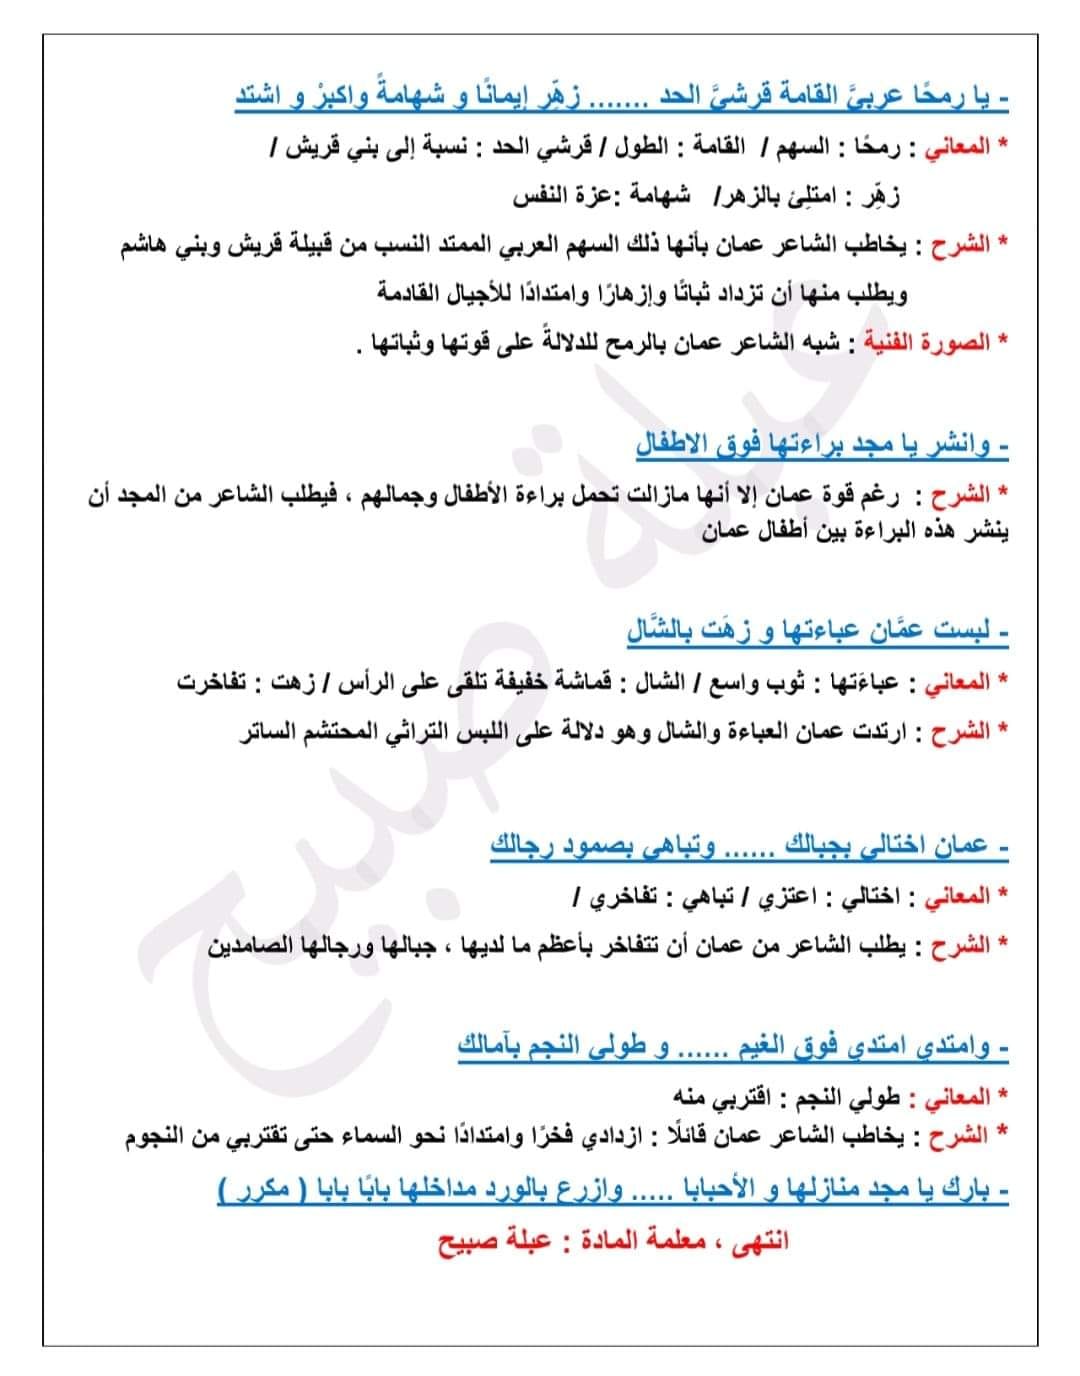 MTU5NTE3MC44ODk8 بالصور شرح قصيدة ارخت عمان جدائلها مادة اللغة العربية للصف السابع الفصل الاول 2023